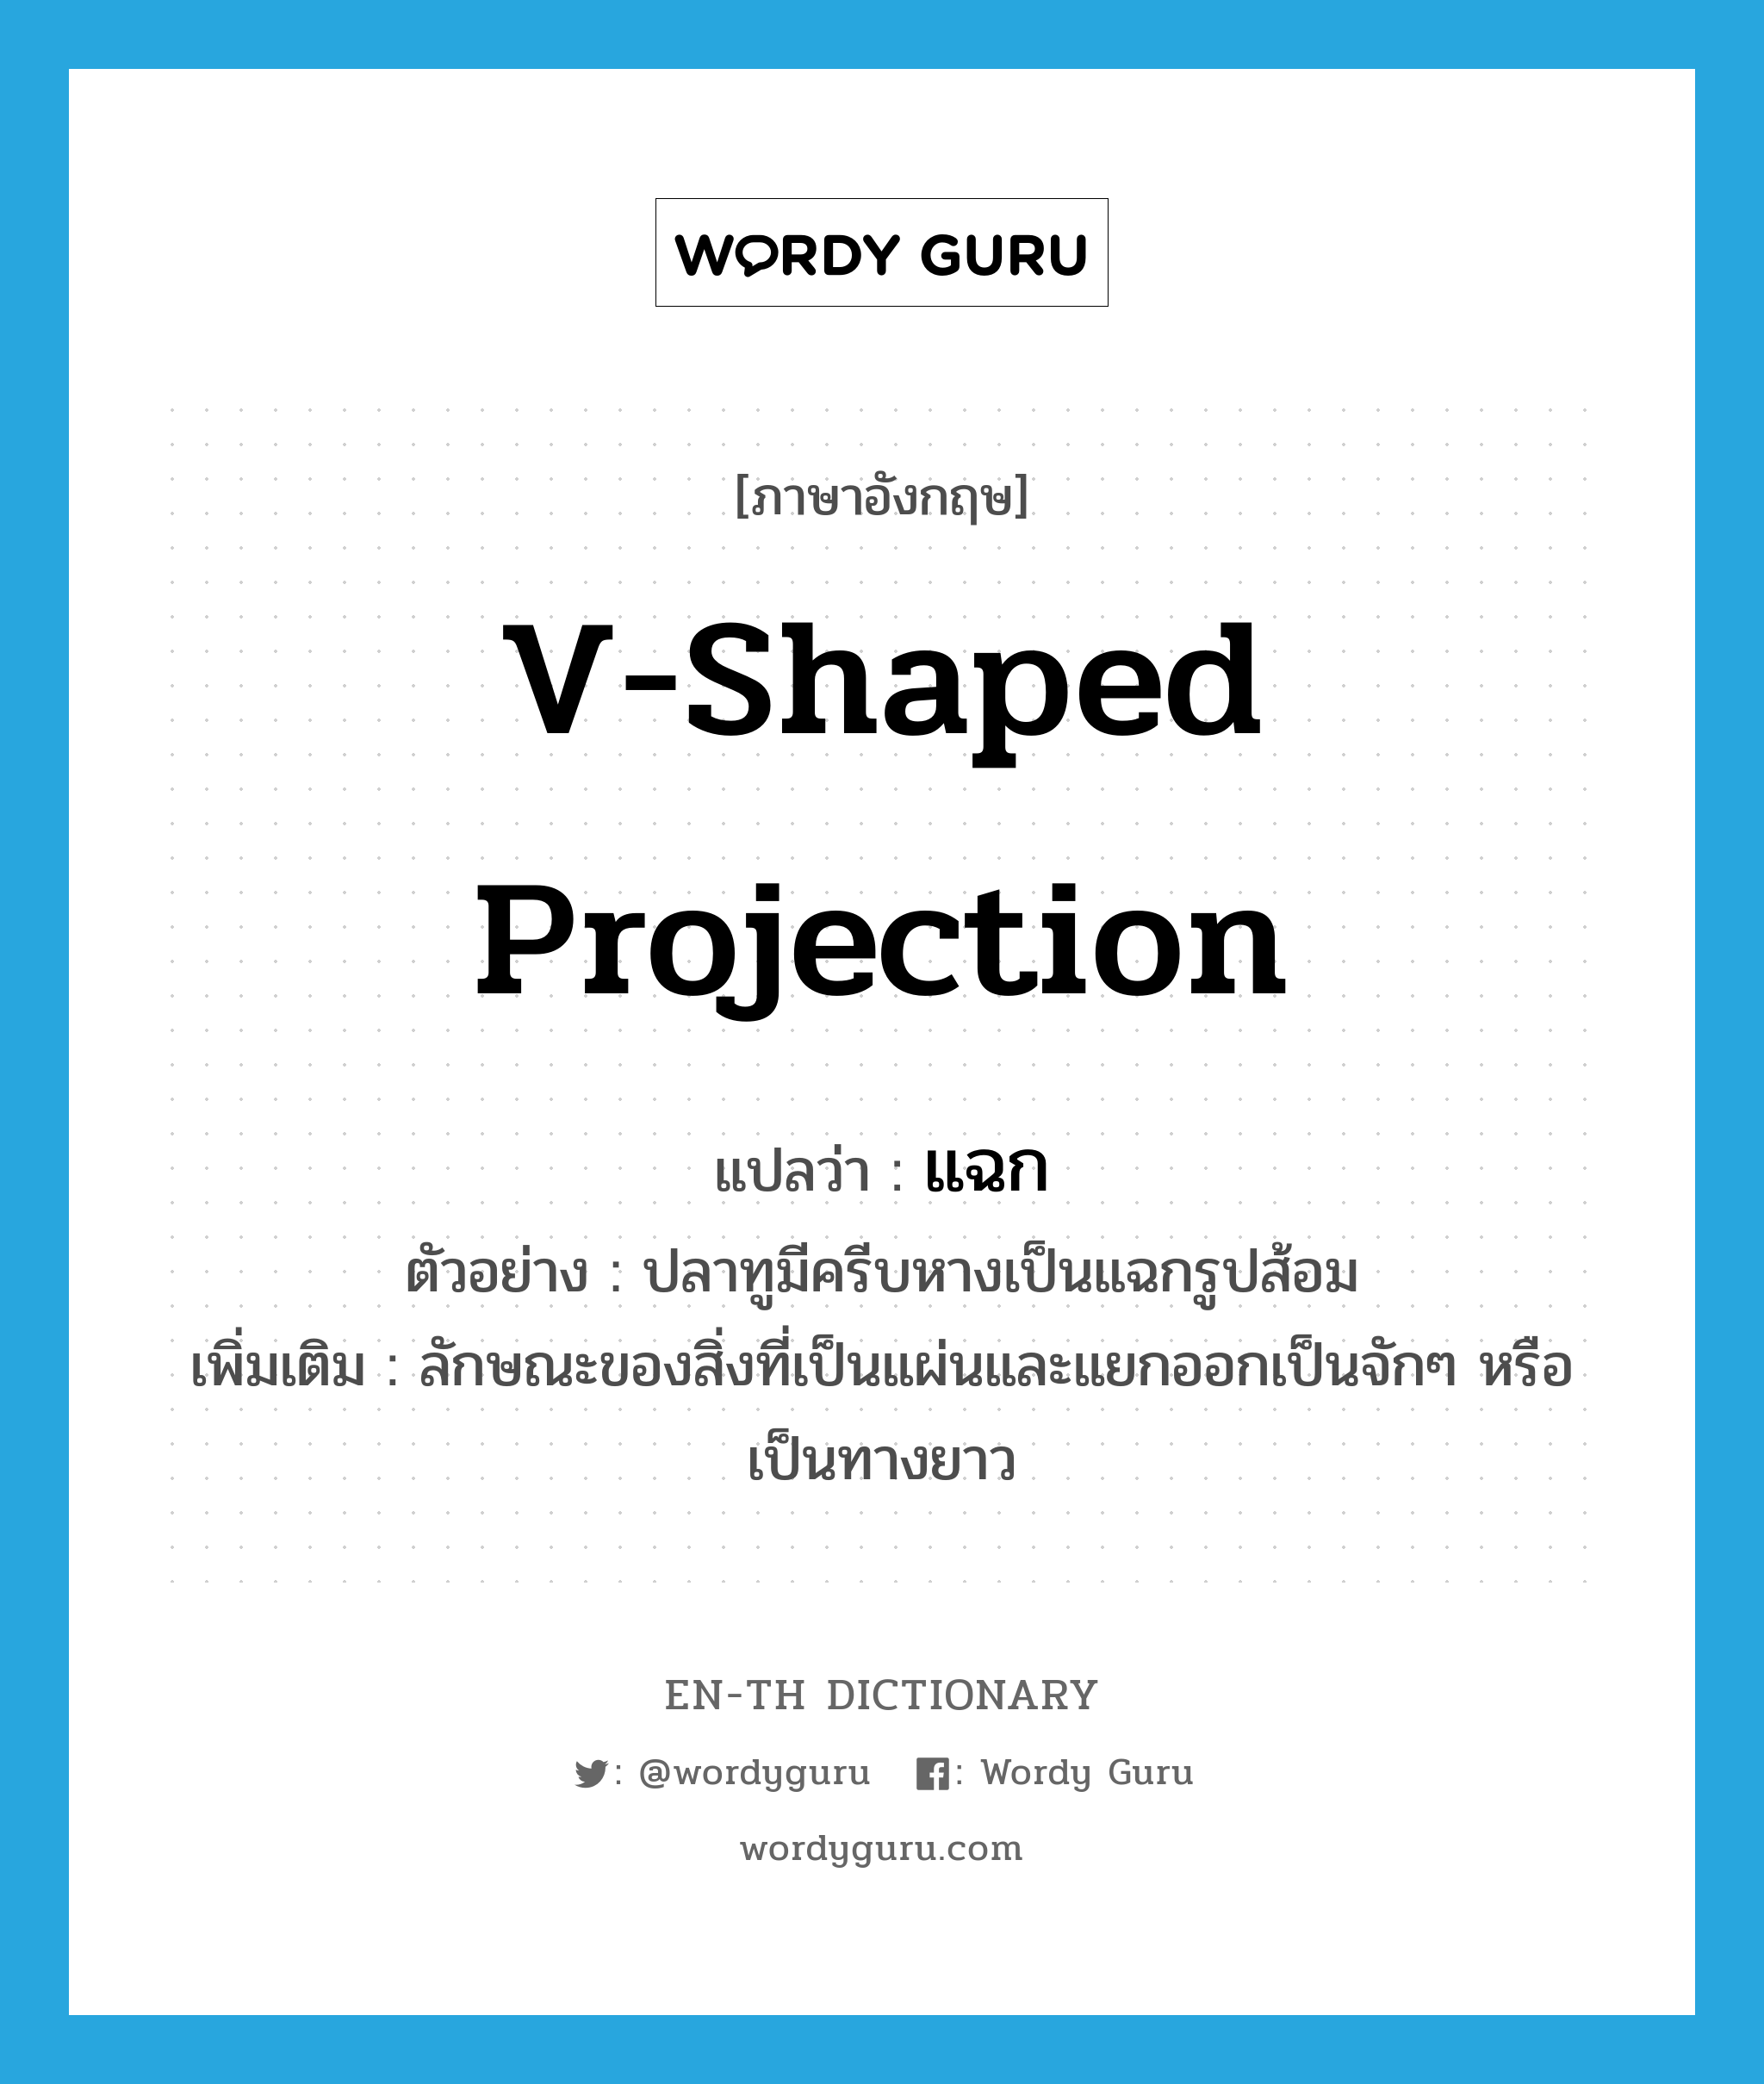 v-shaped projection แปลว่า?, คำศัพท์ภาษาอังกฤษ v-shaped projection แปลว่า แฉก ประเภท N ตัวอย่าง ปลาทูมีครีบหางเป็นแฉกรูปส้อม เพิ่มเติม ลักษณะของสิ่งที่เป็นแผ่นและแยกออกเป็นจักๆ หรือเป็นทางยาว หมวด N